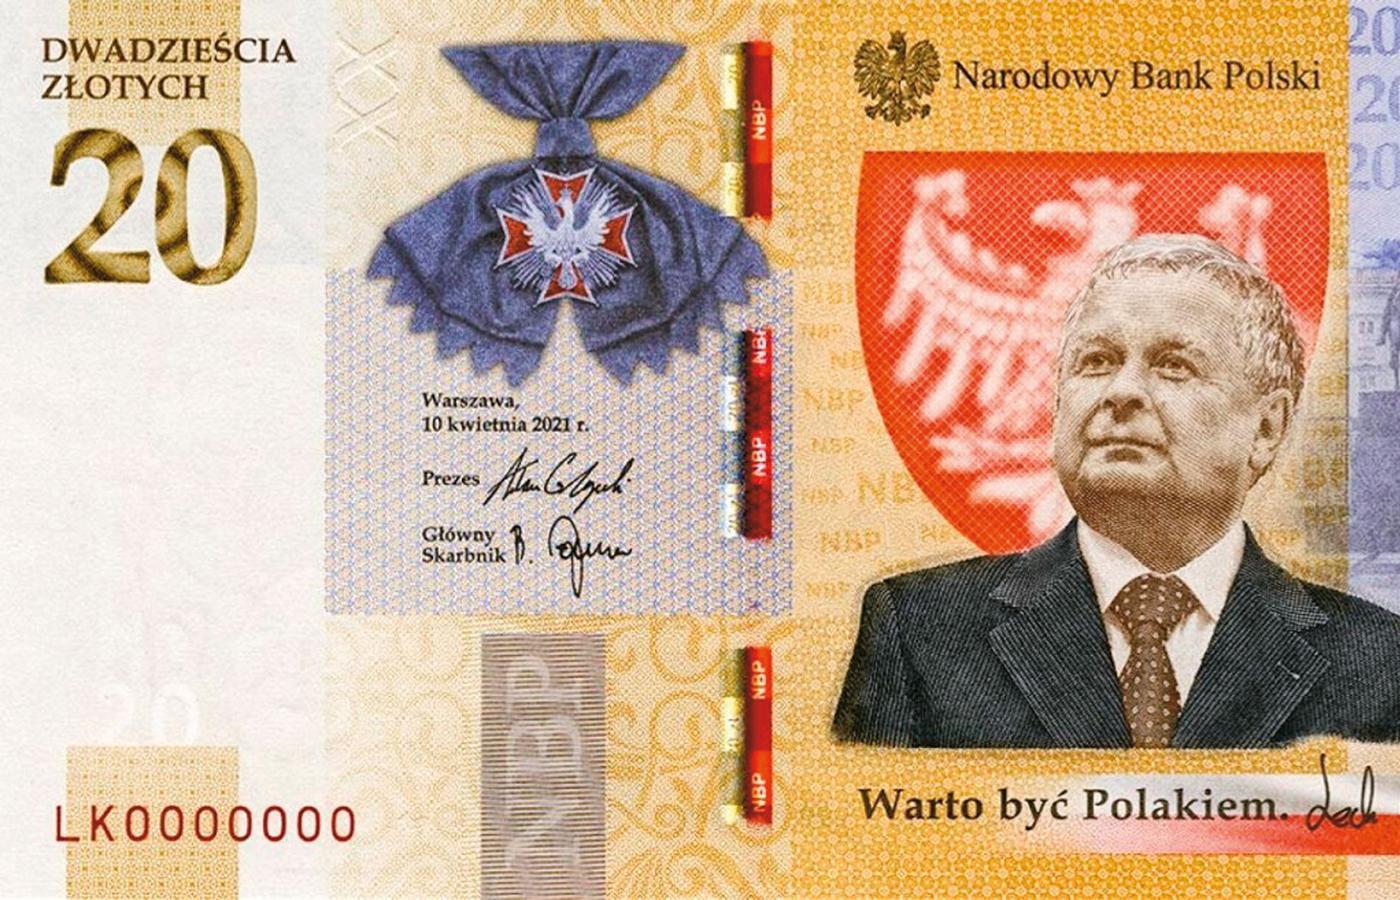 Wyemitowany właśnie przez NBP 20-złotowy banknot z Lechem Kaczyńskim opatrzony został dumnym cytatem „Warto być Polakiem”.